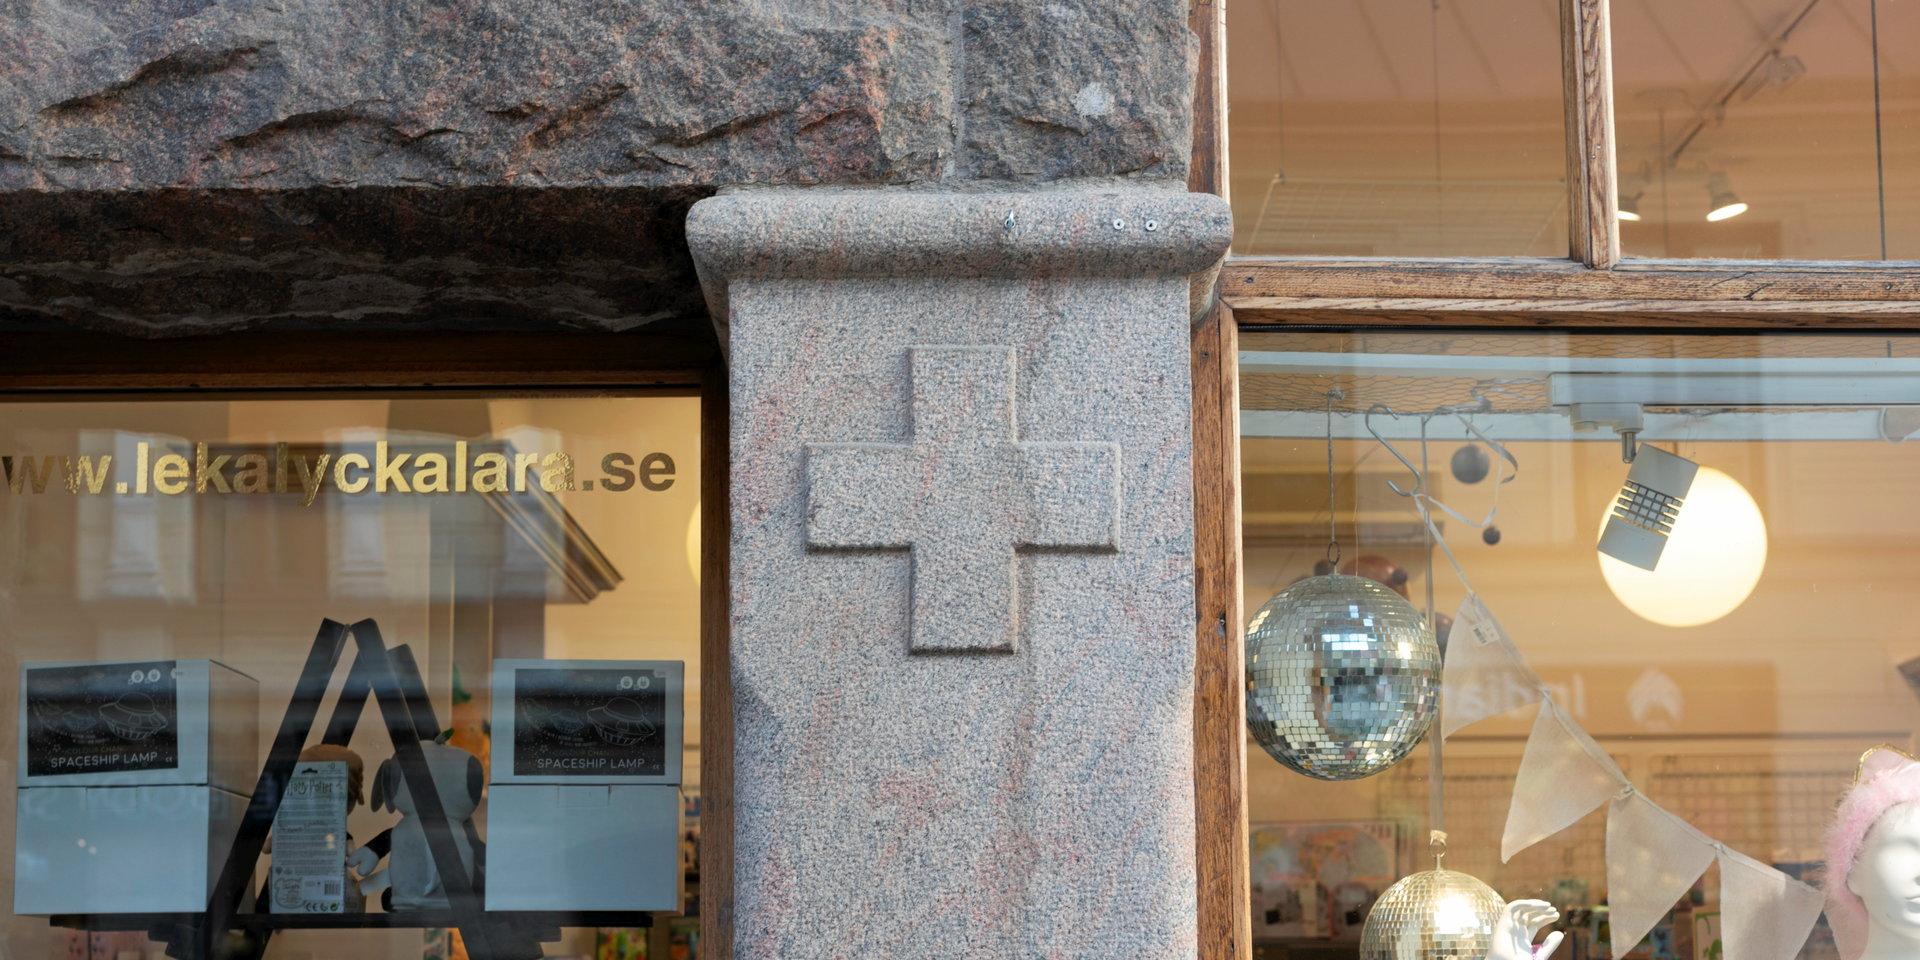 Gamla Apoteket Vakteln på Köpmansgatan 12. På bottenvåningen finns stenpartier med så kallade grekiska kors uthuggna – vilket kan föra tankarna till Röda Korset och till sjukvård i största allmänhet.